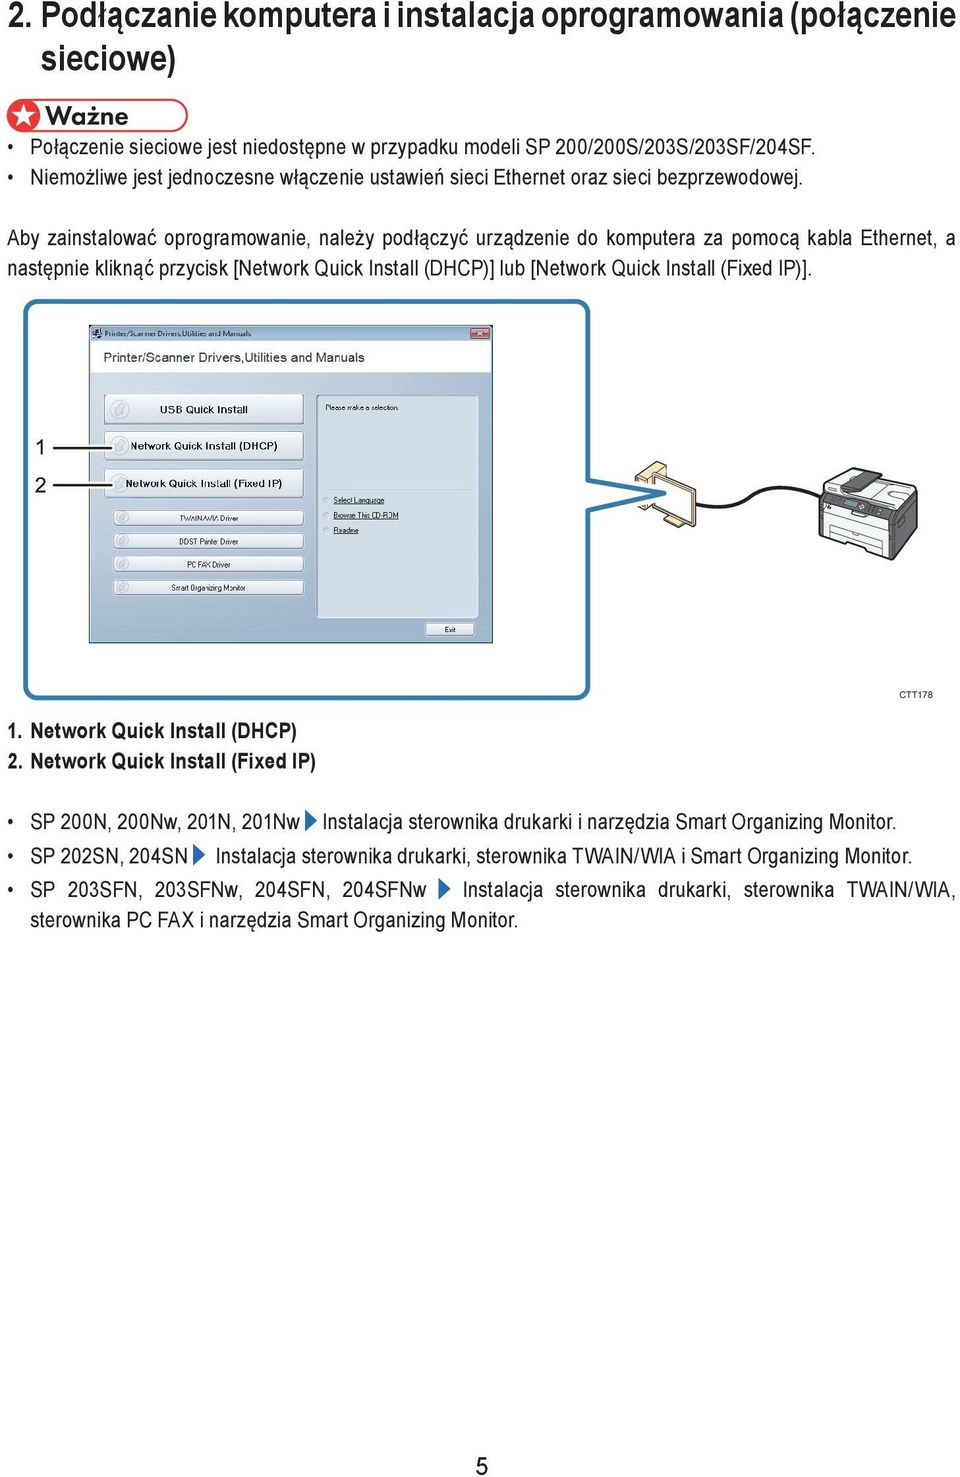 Aby zainstalować oprogramowanie, należy podłączyć urządzenie do komputera za pomocą kabla Ethernet, a następnie kliknąć przycisk [Network Quick Install (DHCP)] lub [Network Quick Install (Fixed IP)].